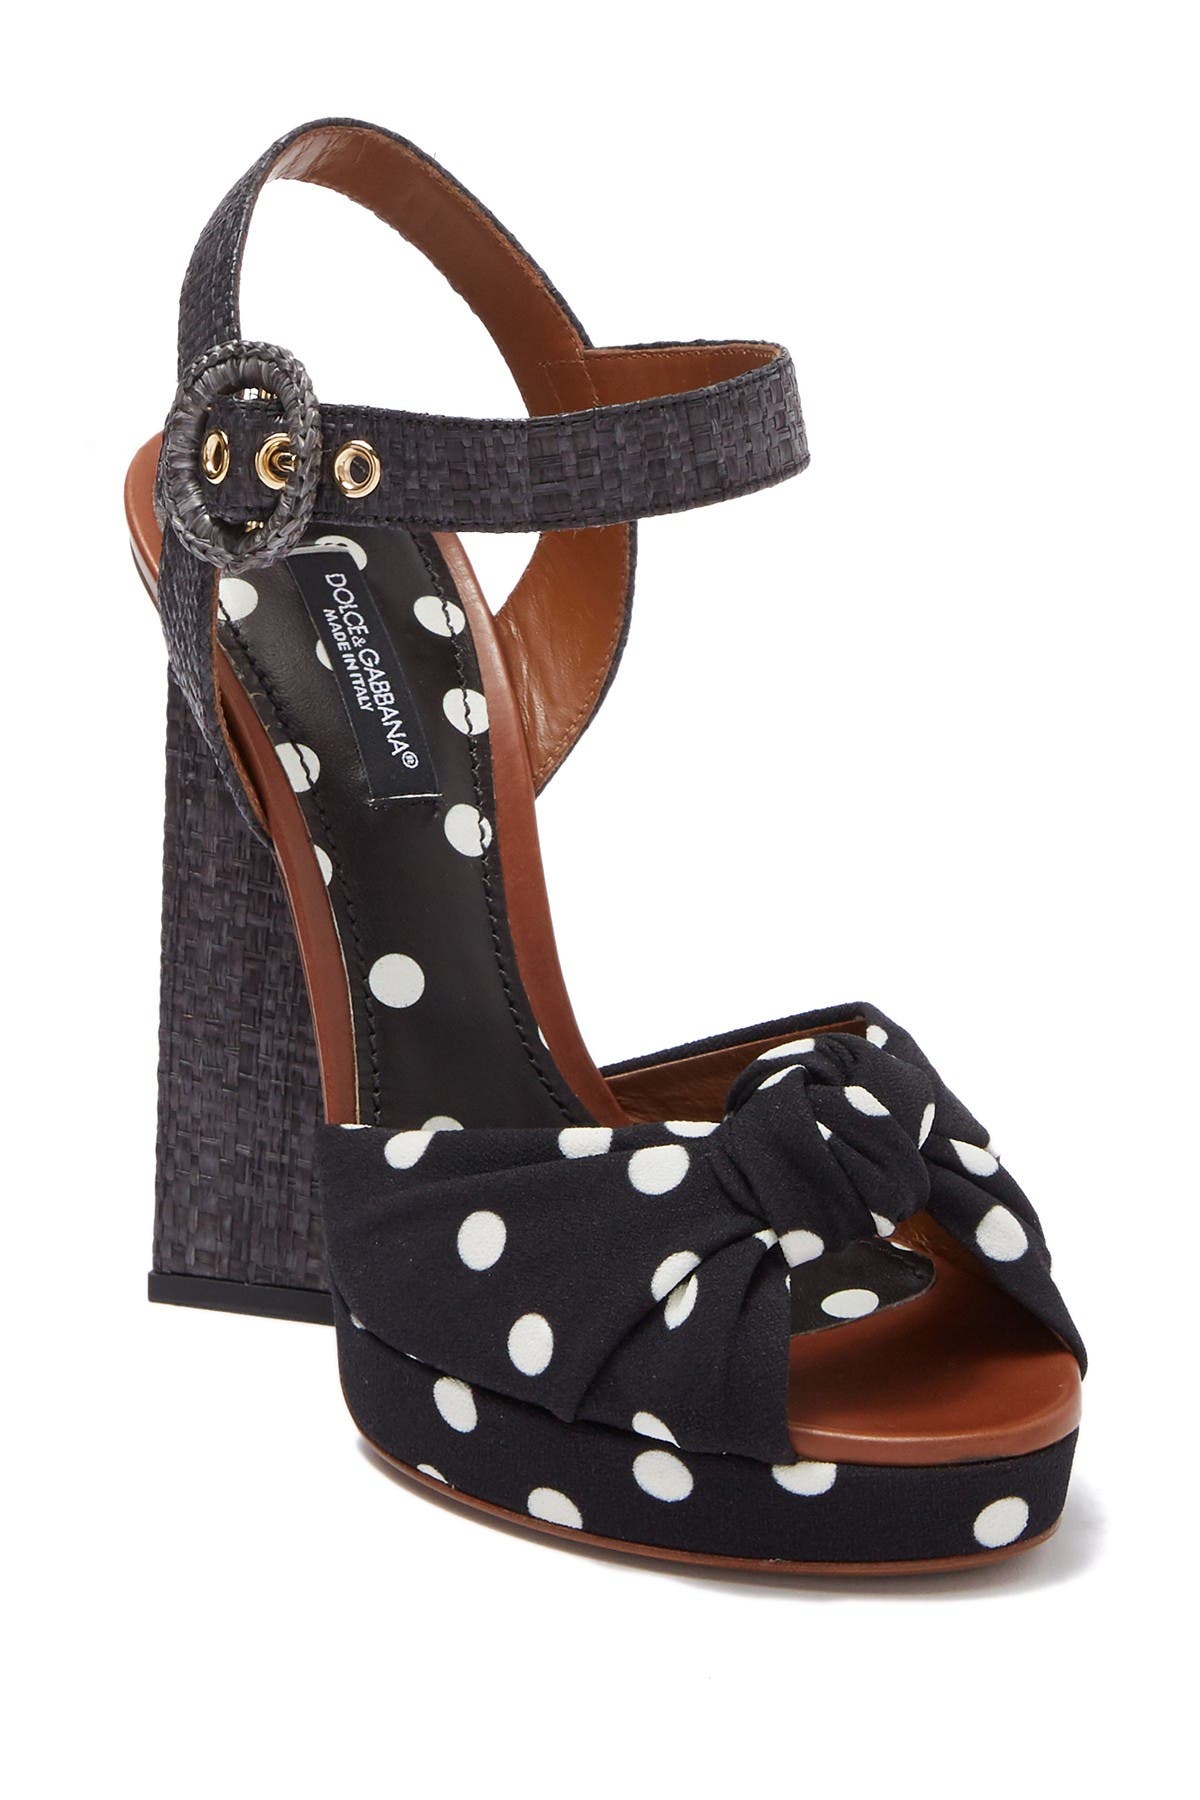 polka dot block heels